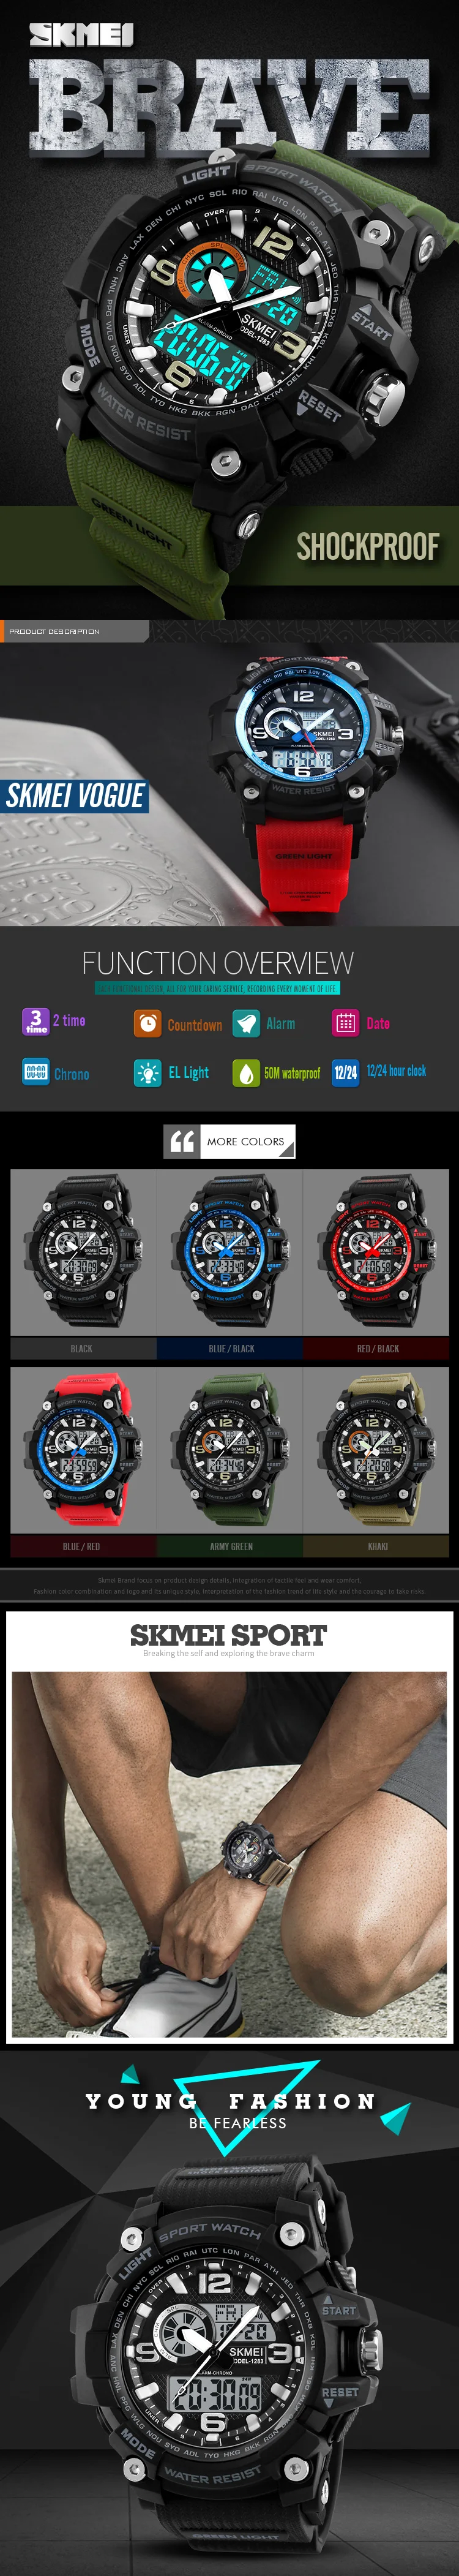 SKMEI G Стиль военные спортивные часы для мужчин s часы лучший бренд класса люкс водонепроницаемые ударостойкие мужские спортивные часы Relogio Masculino